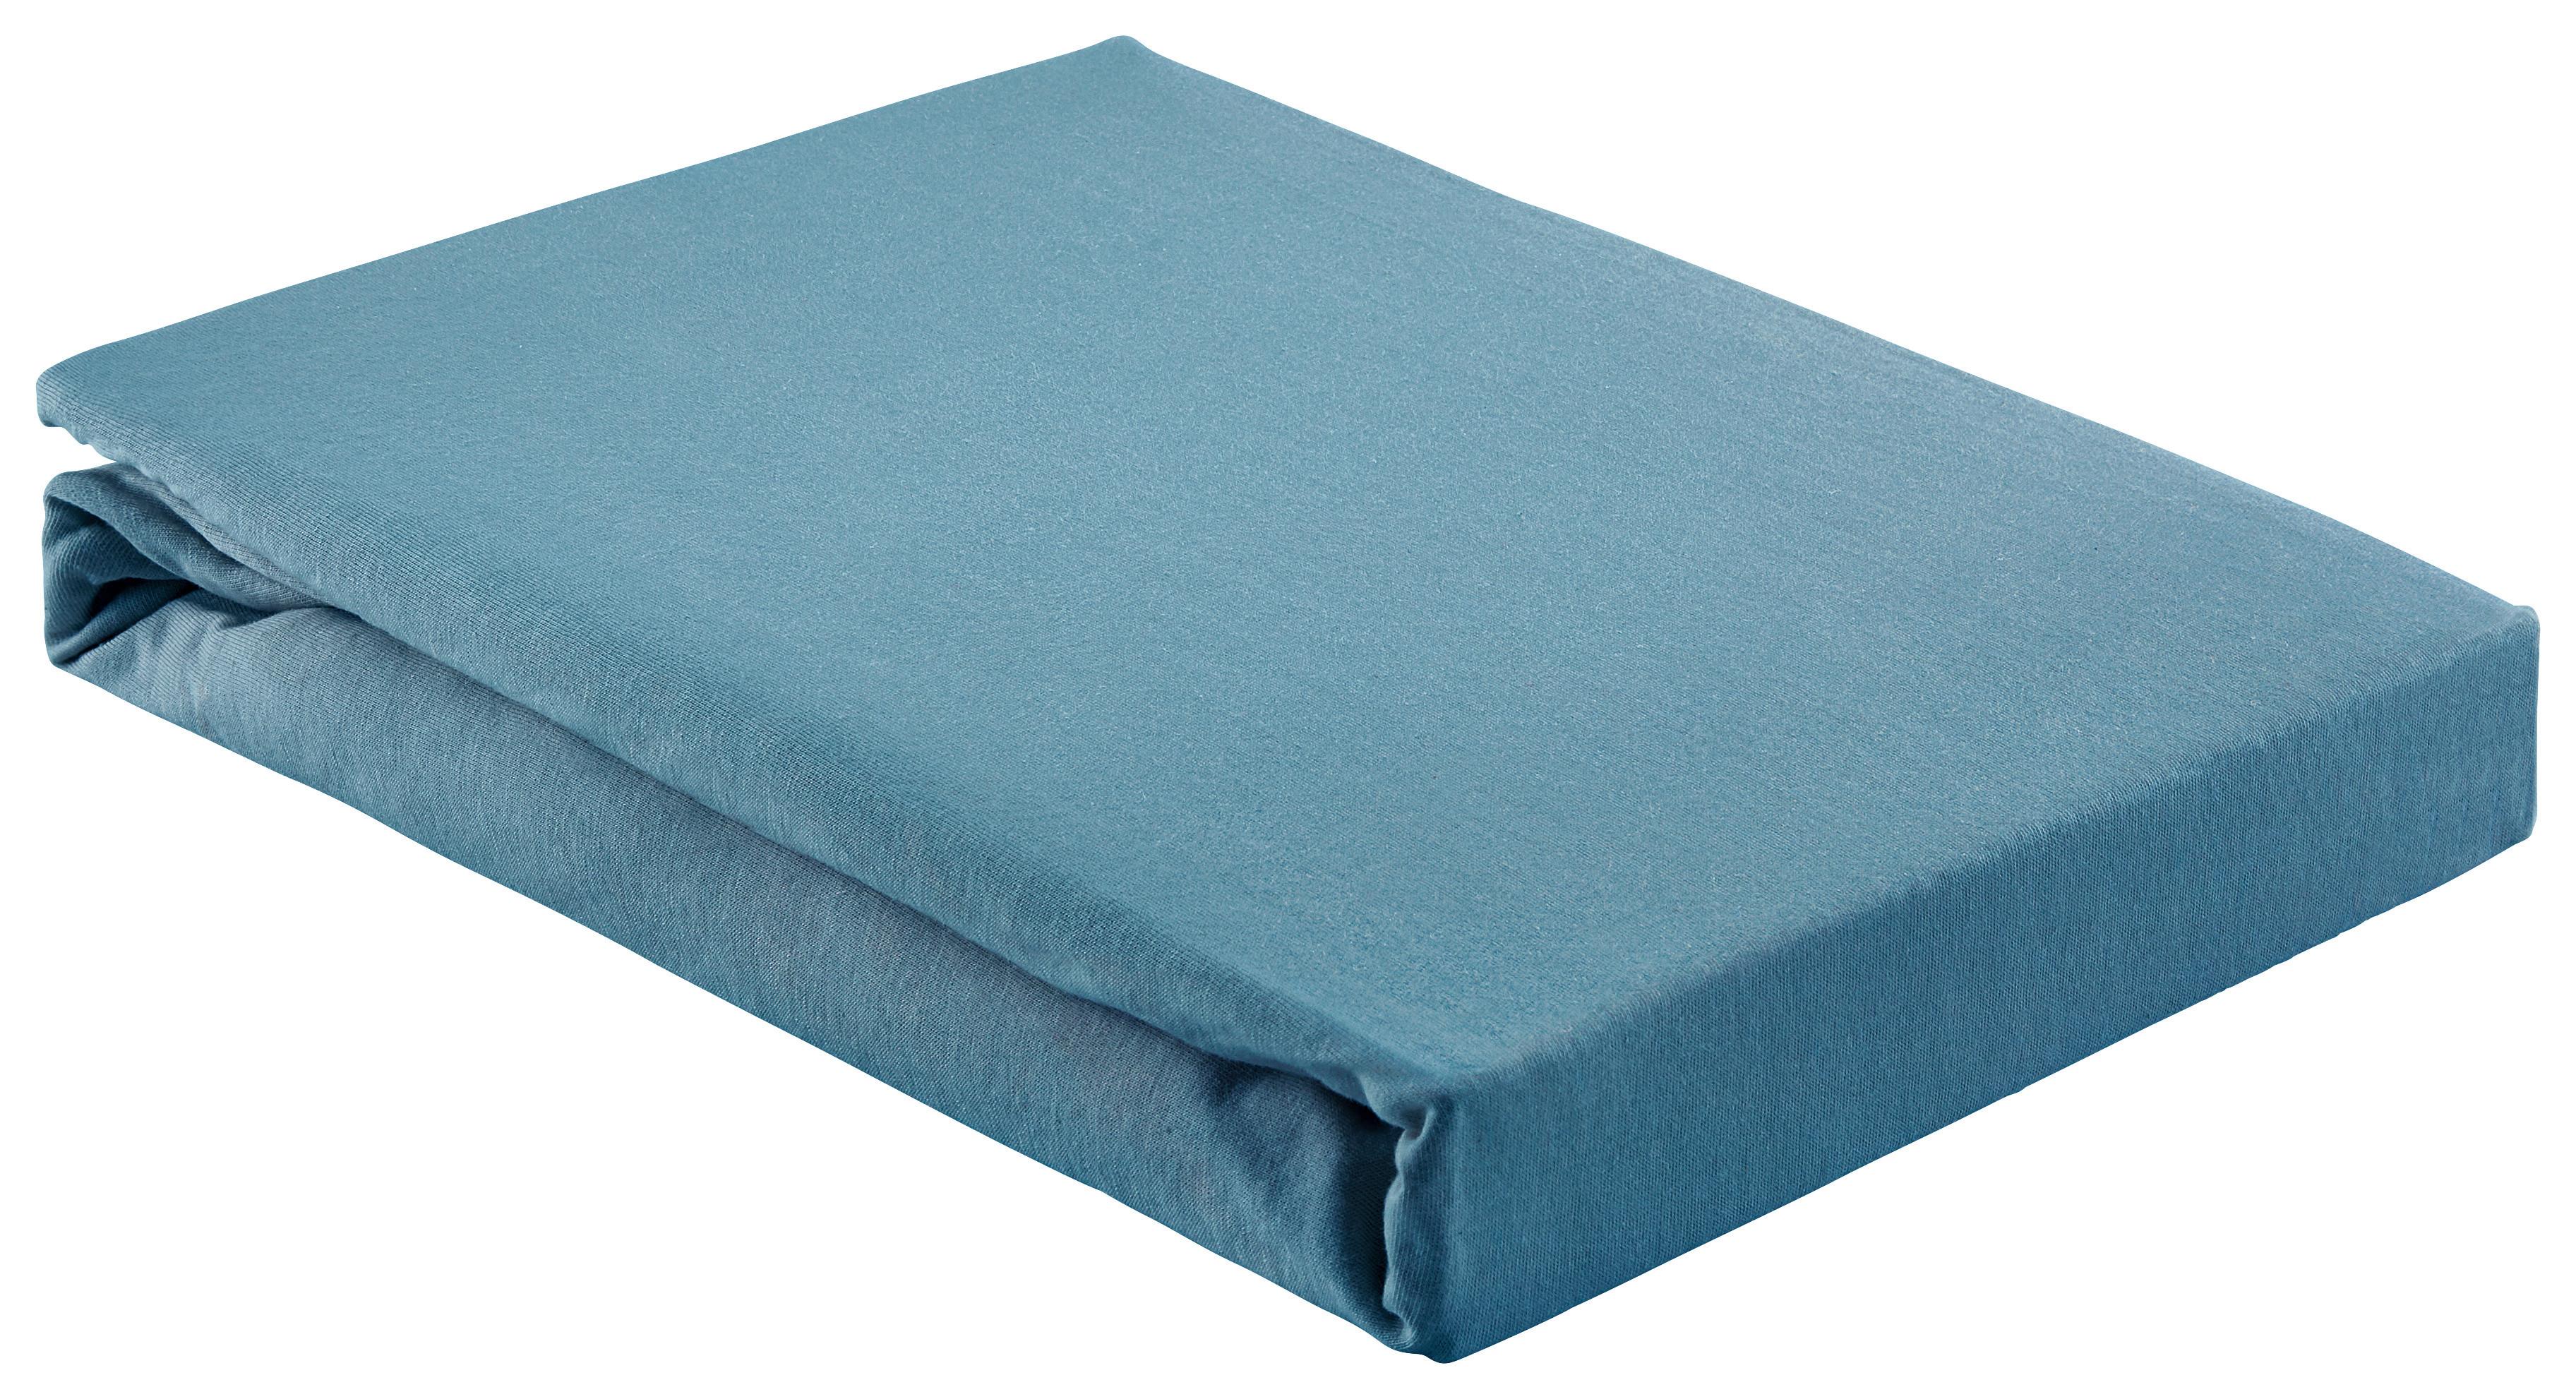 Elastické Prostěradlo Basic, 180/200cm, Modrá - modrá, textil (180/200cm) - Modern Living